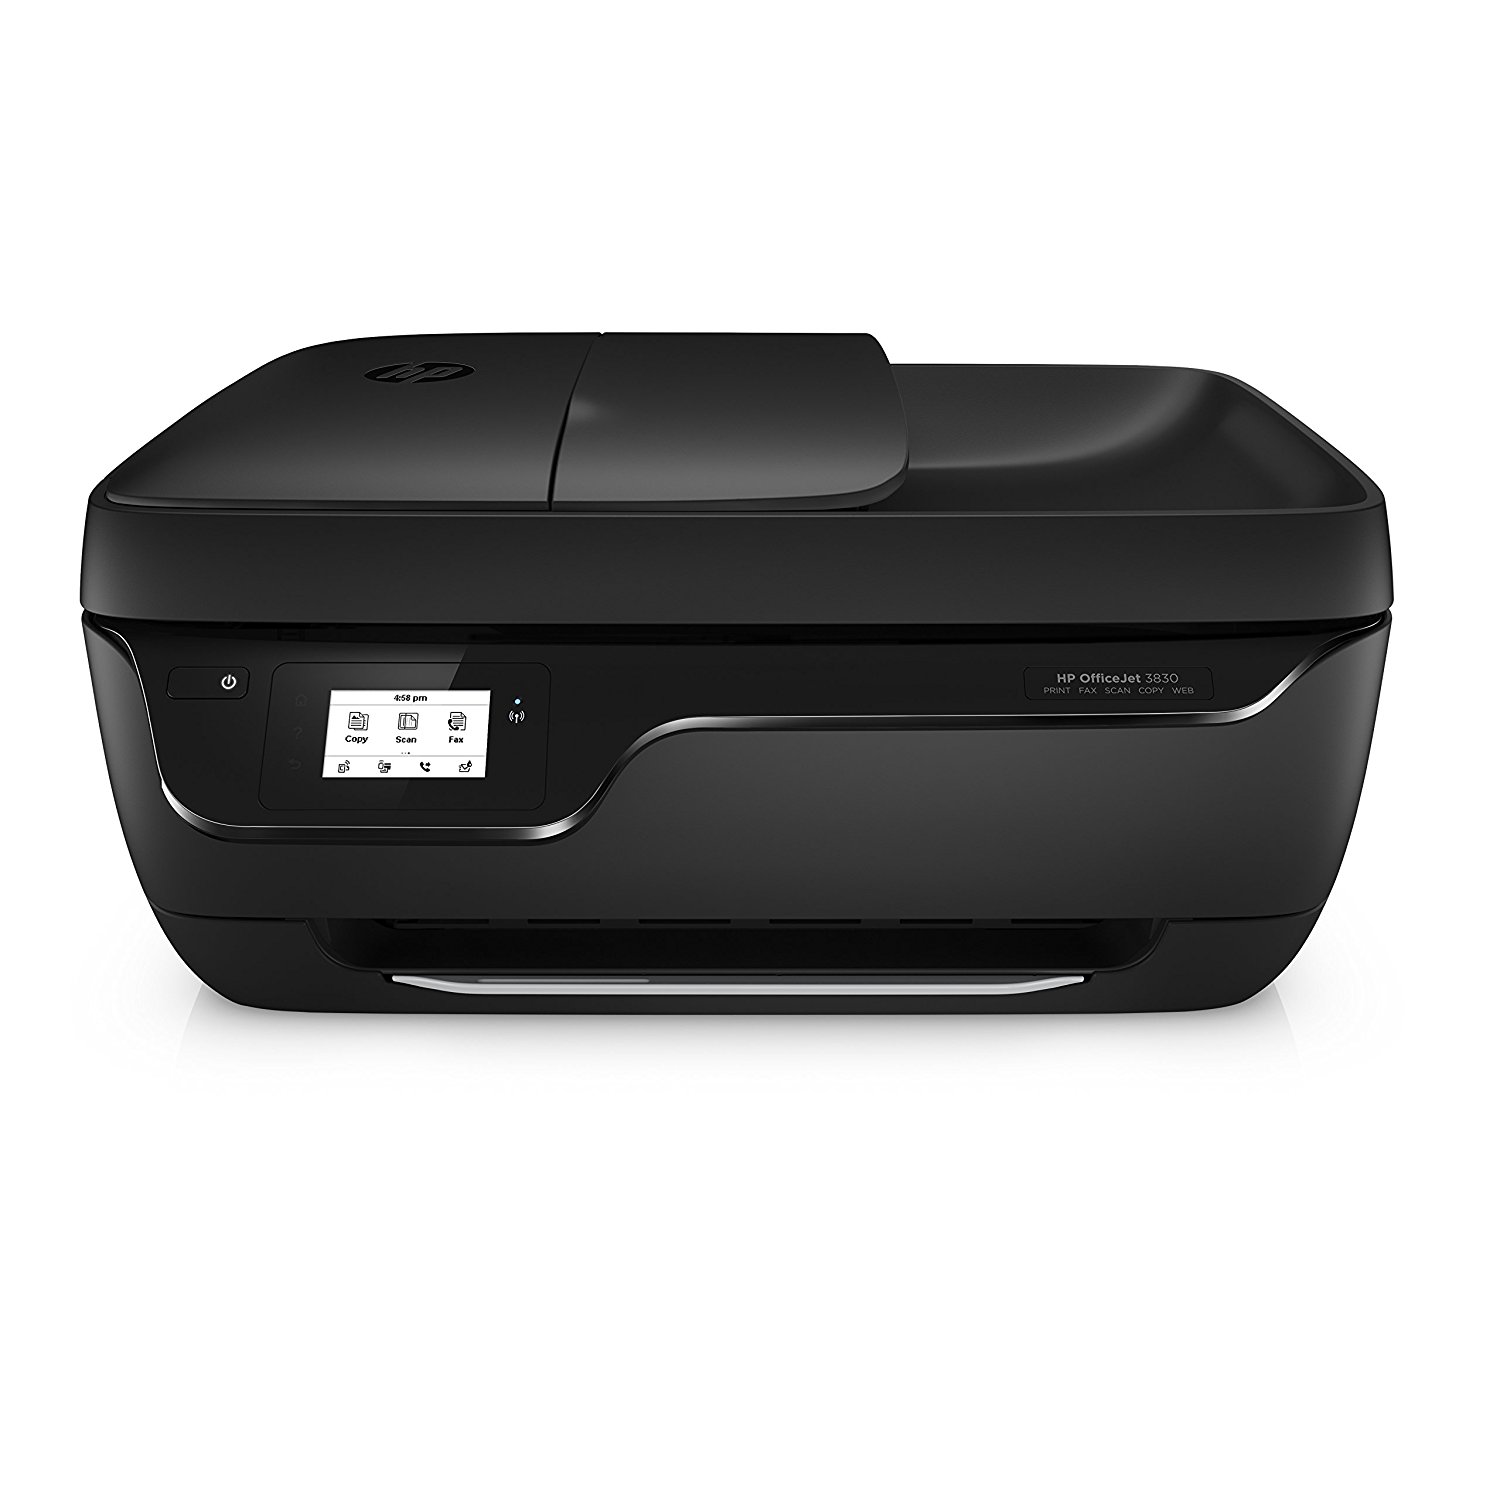 9. HP OfficeJet 3830 Wireless Printer